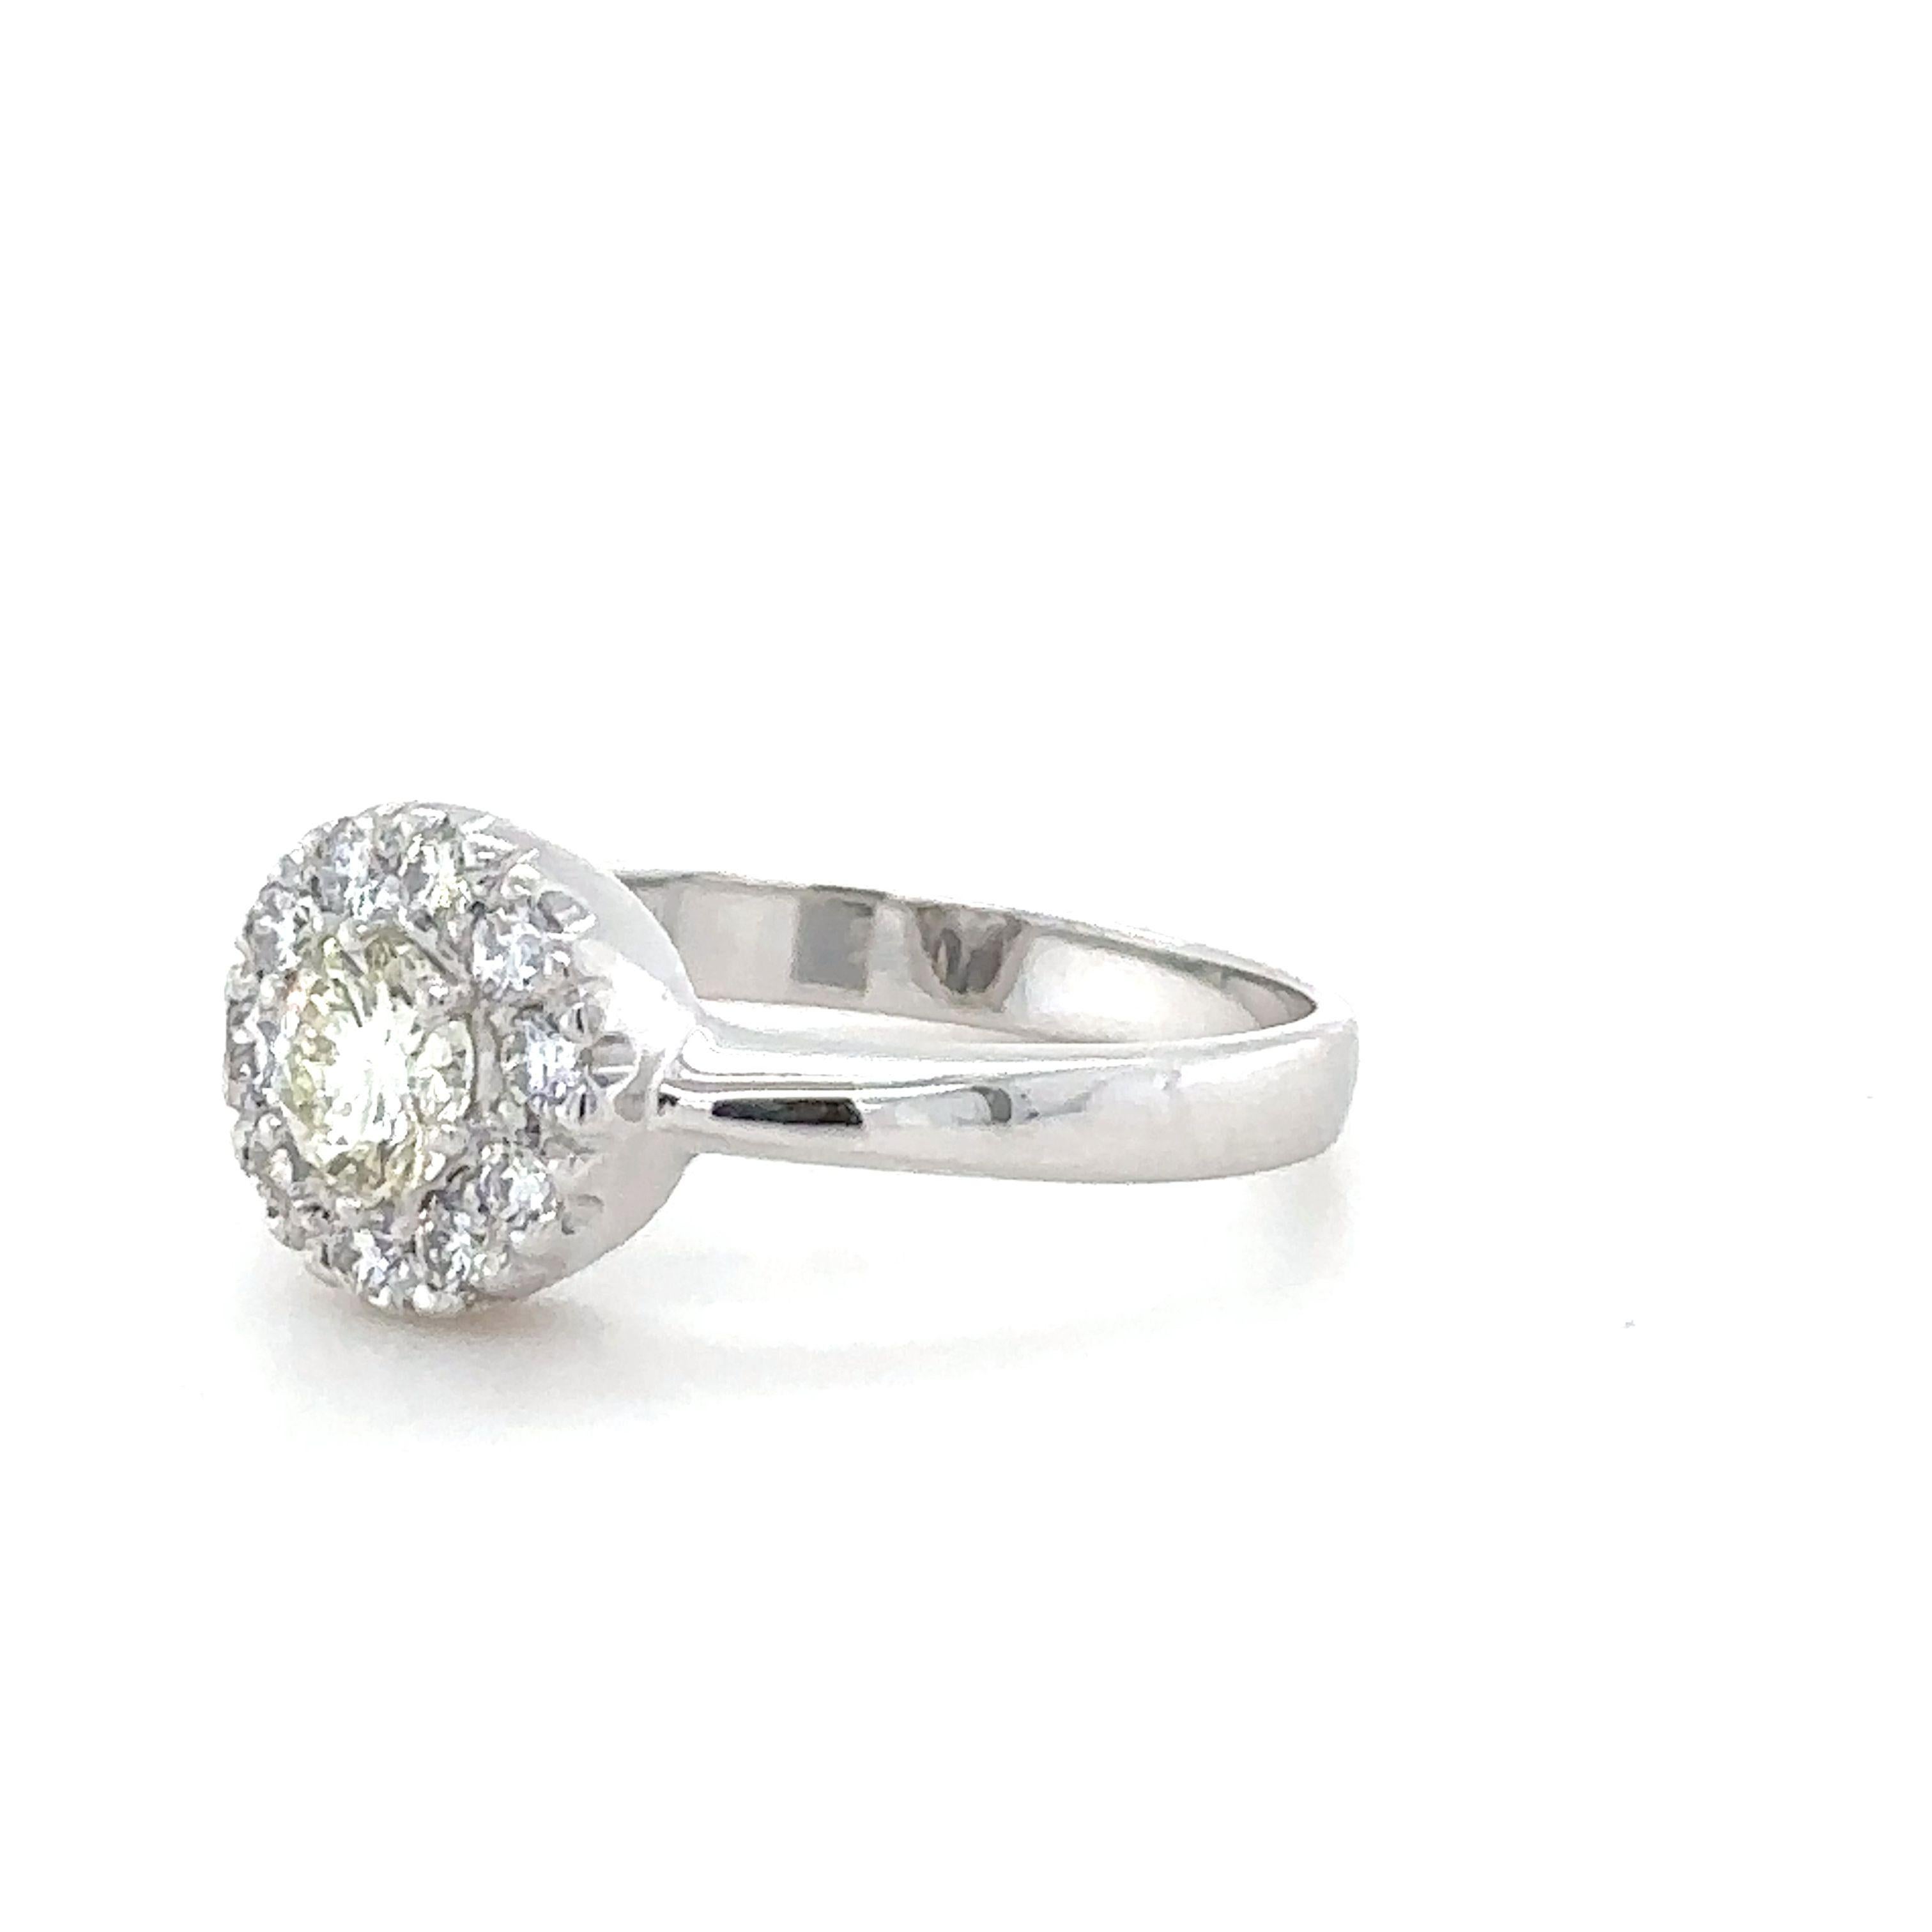 Bague en or blanc 18ct, sertie de 10 diamants ronds de taille brillant sur un anneau inversé de 2,5 mm. 
Diamants 1 = 0,33ct, couleur M, pureté VS  10 x diamants = 0,30ct, couleur G, pureté VS. Poids 3,73 grammes.

Métal : Or blanc 18ct
Carat :